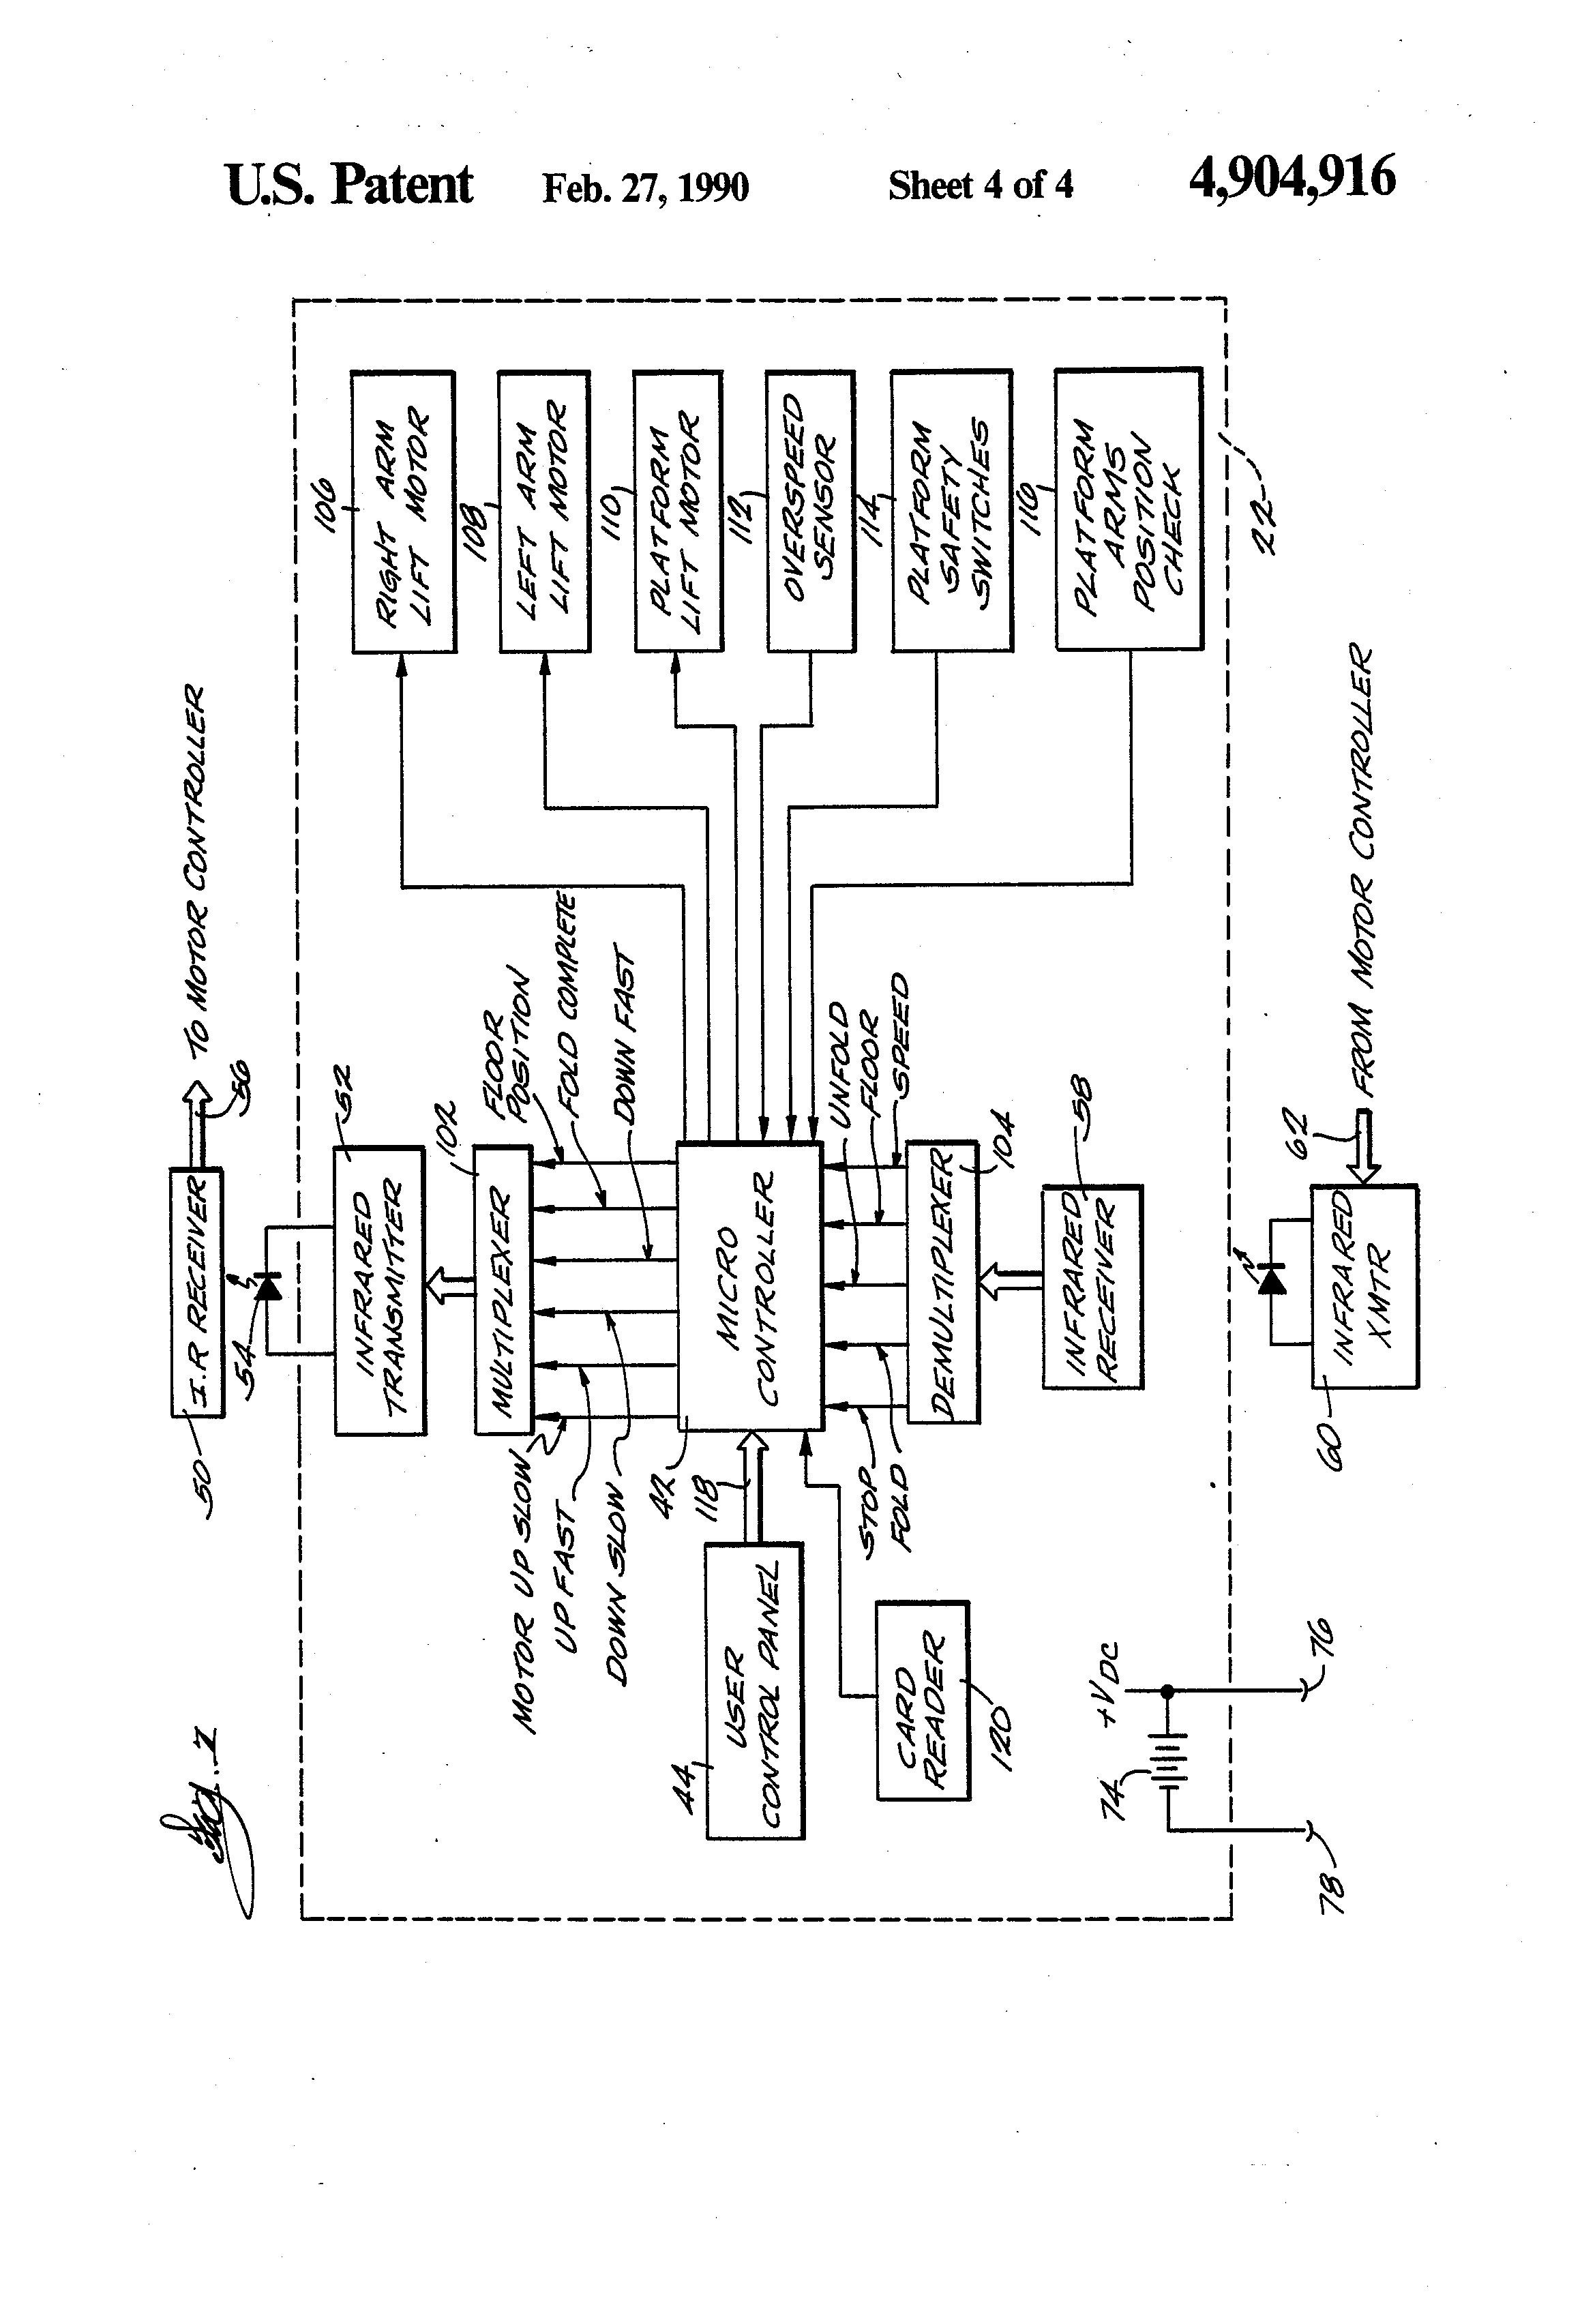 ls 53t1 4p wiring diagram